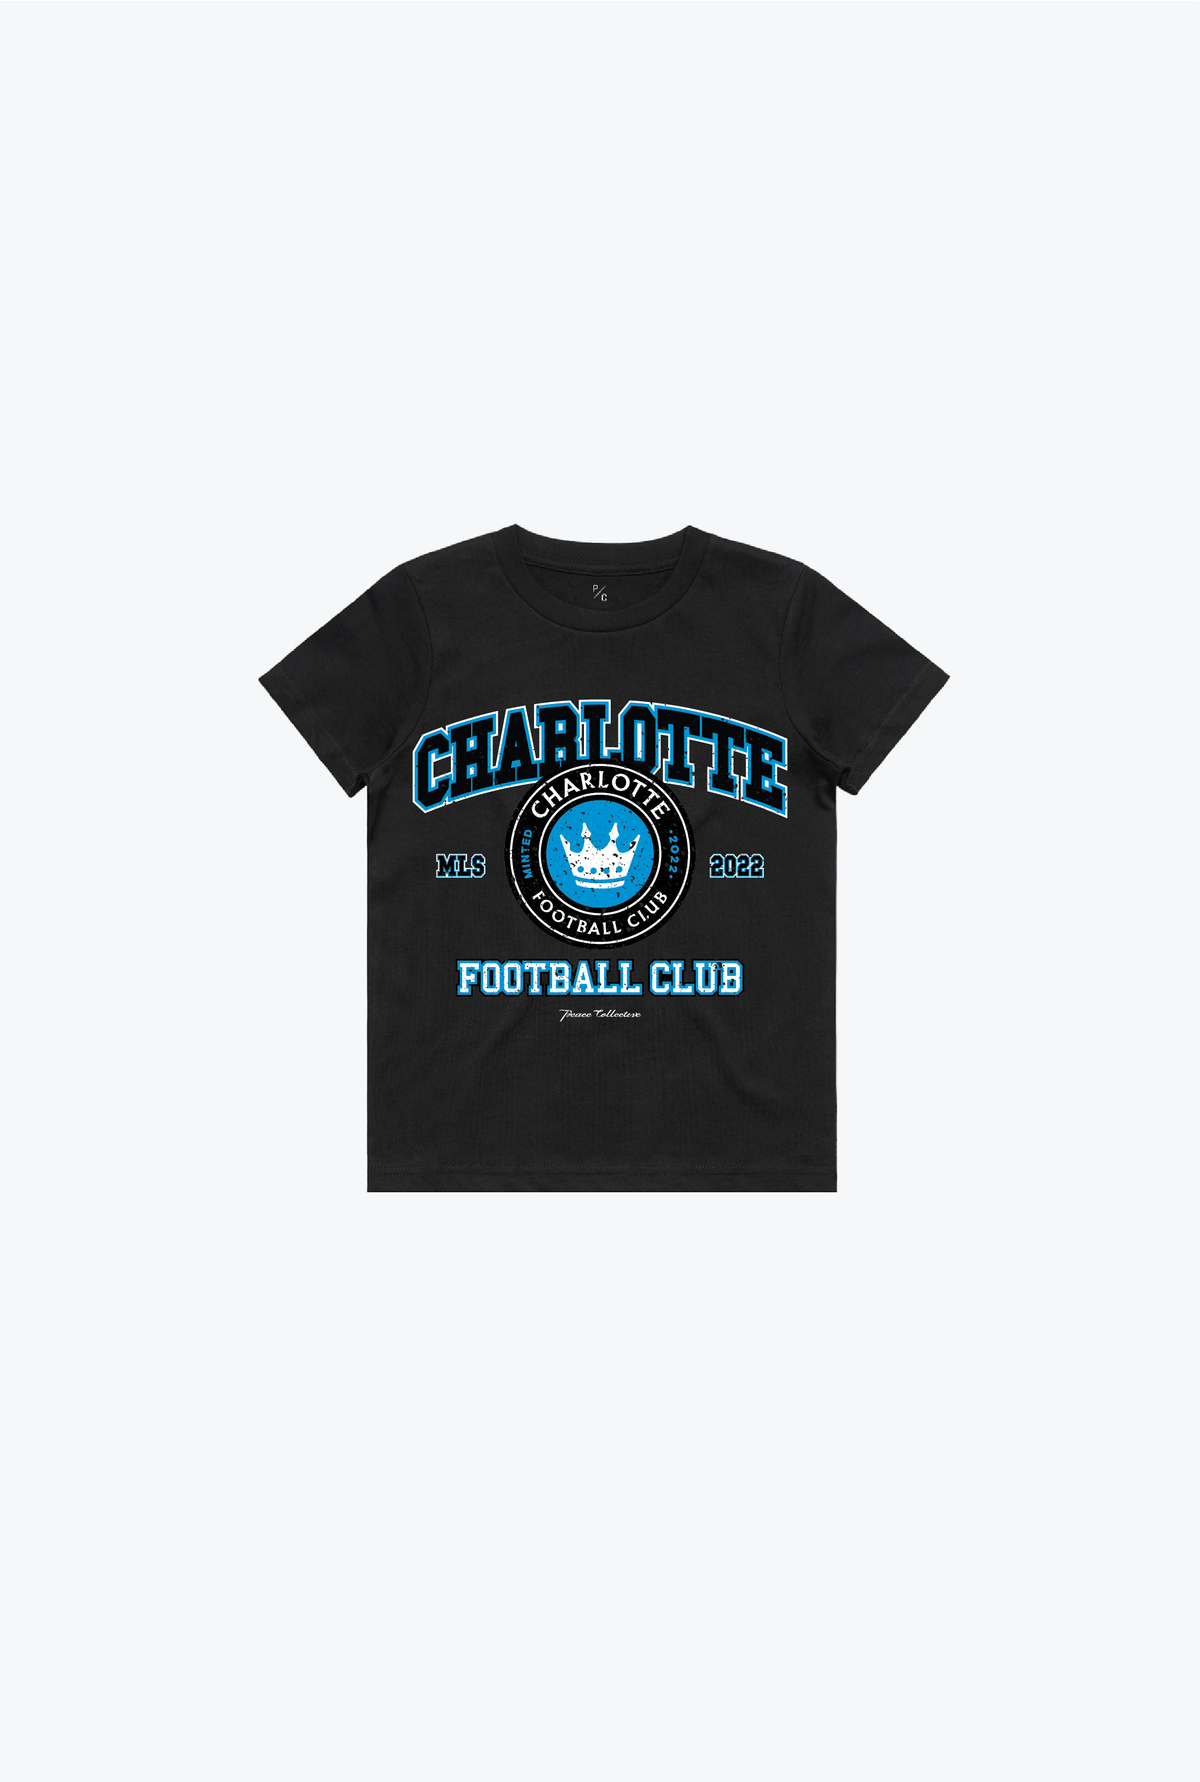 Charlotte FC Vintage Washed Kids T-Shirt - Black